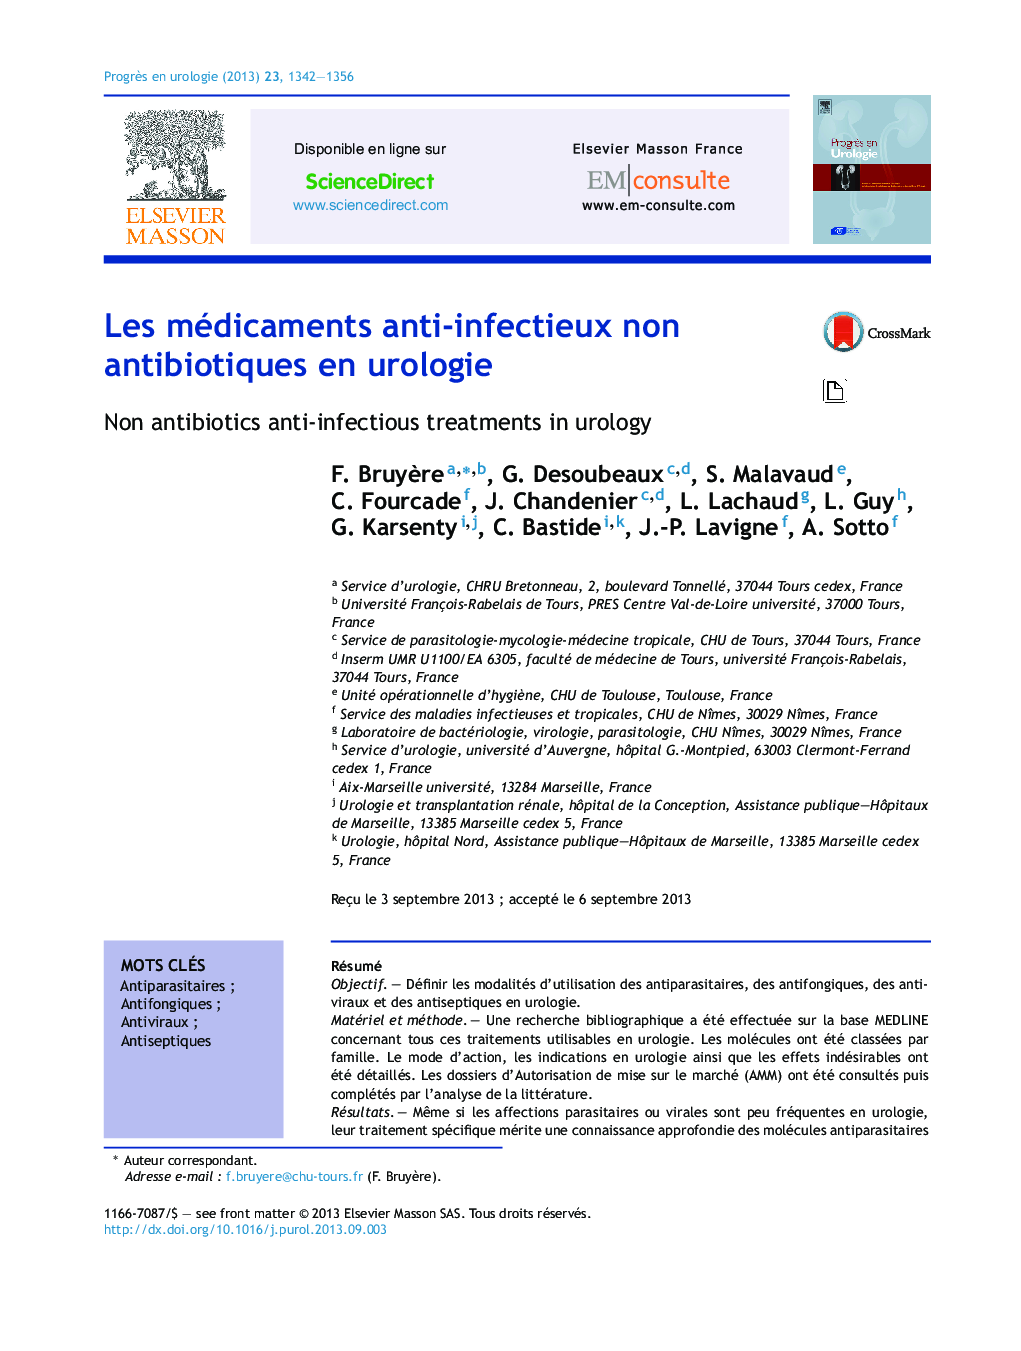 Les médicaments anti-infectieux non antibiotiques en urologie